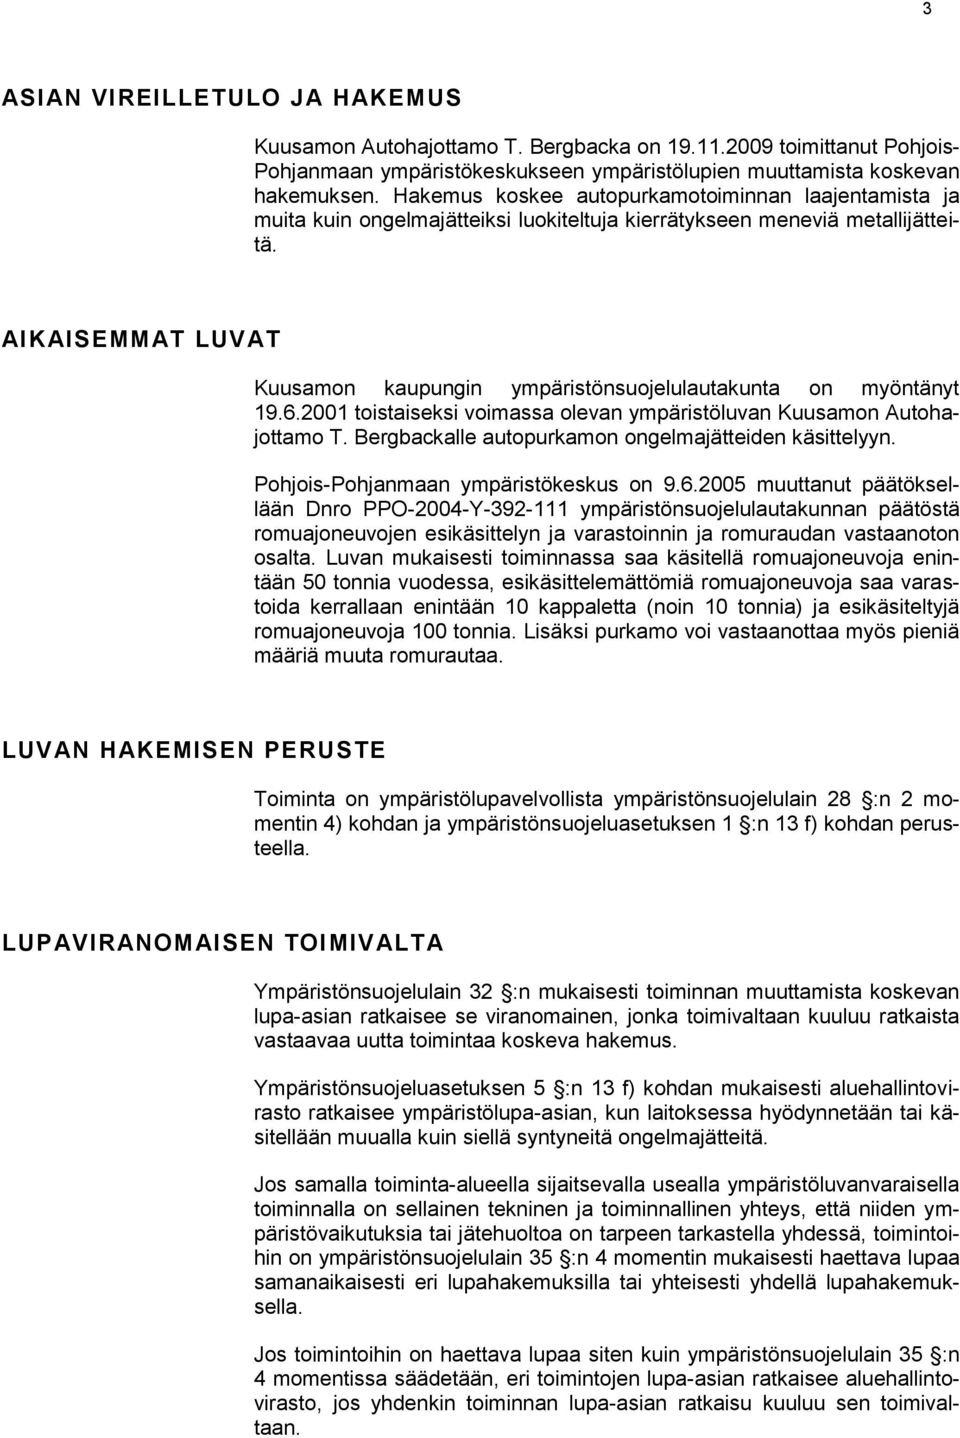 AIKAISEMMAT LUVAT Kuusamon kaupungin ympäristönsuojelulautakunta on myöntänyt 19.6.2001 toistaiseksi voimassa olevan ympäristöluvan Kuusamon Autohajottamo T.